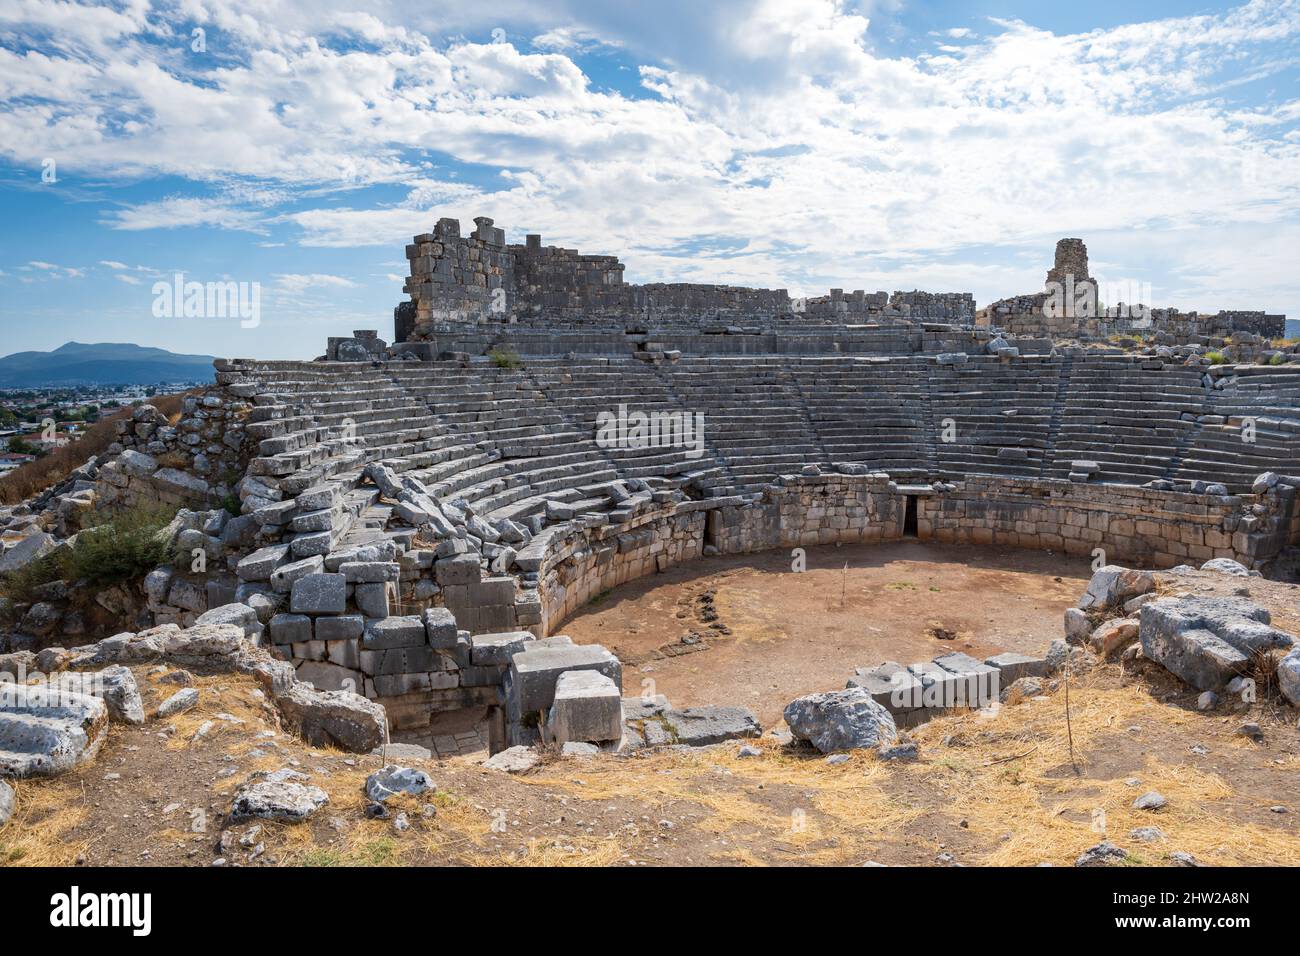 Xanthos archäologische Stätte in der Türkei. Xanthos, die Hauptstadt des antiken Lykiens, steht auf der Liste des UNESCO-Weltkulturerbes. Stockfoto